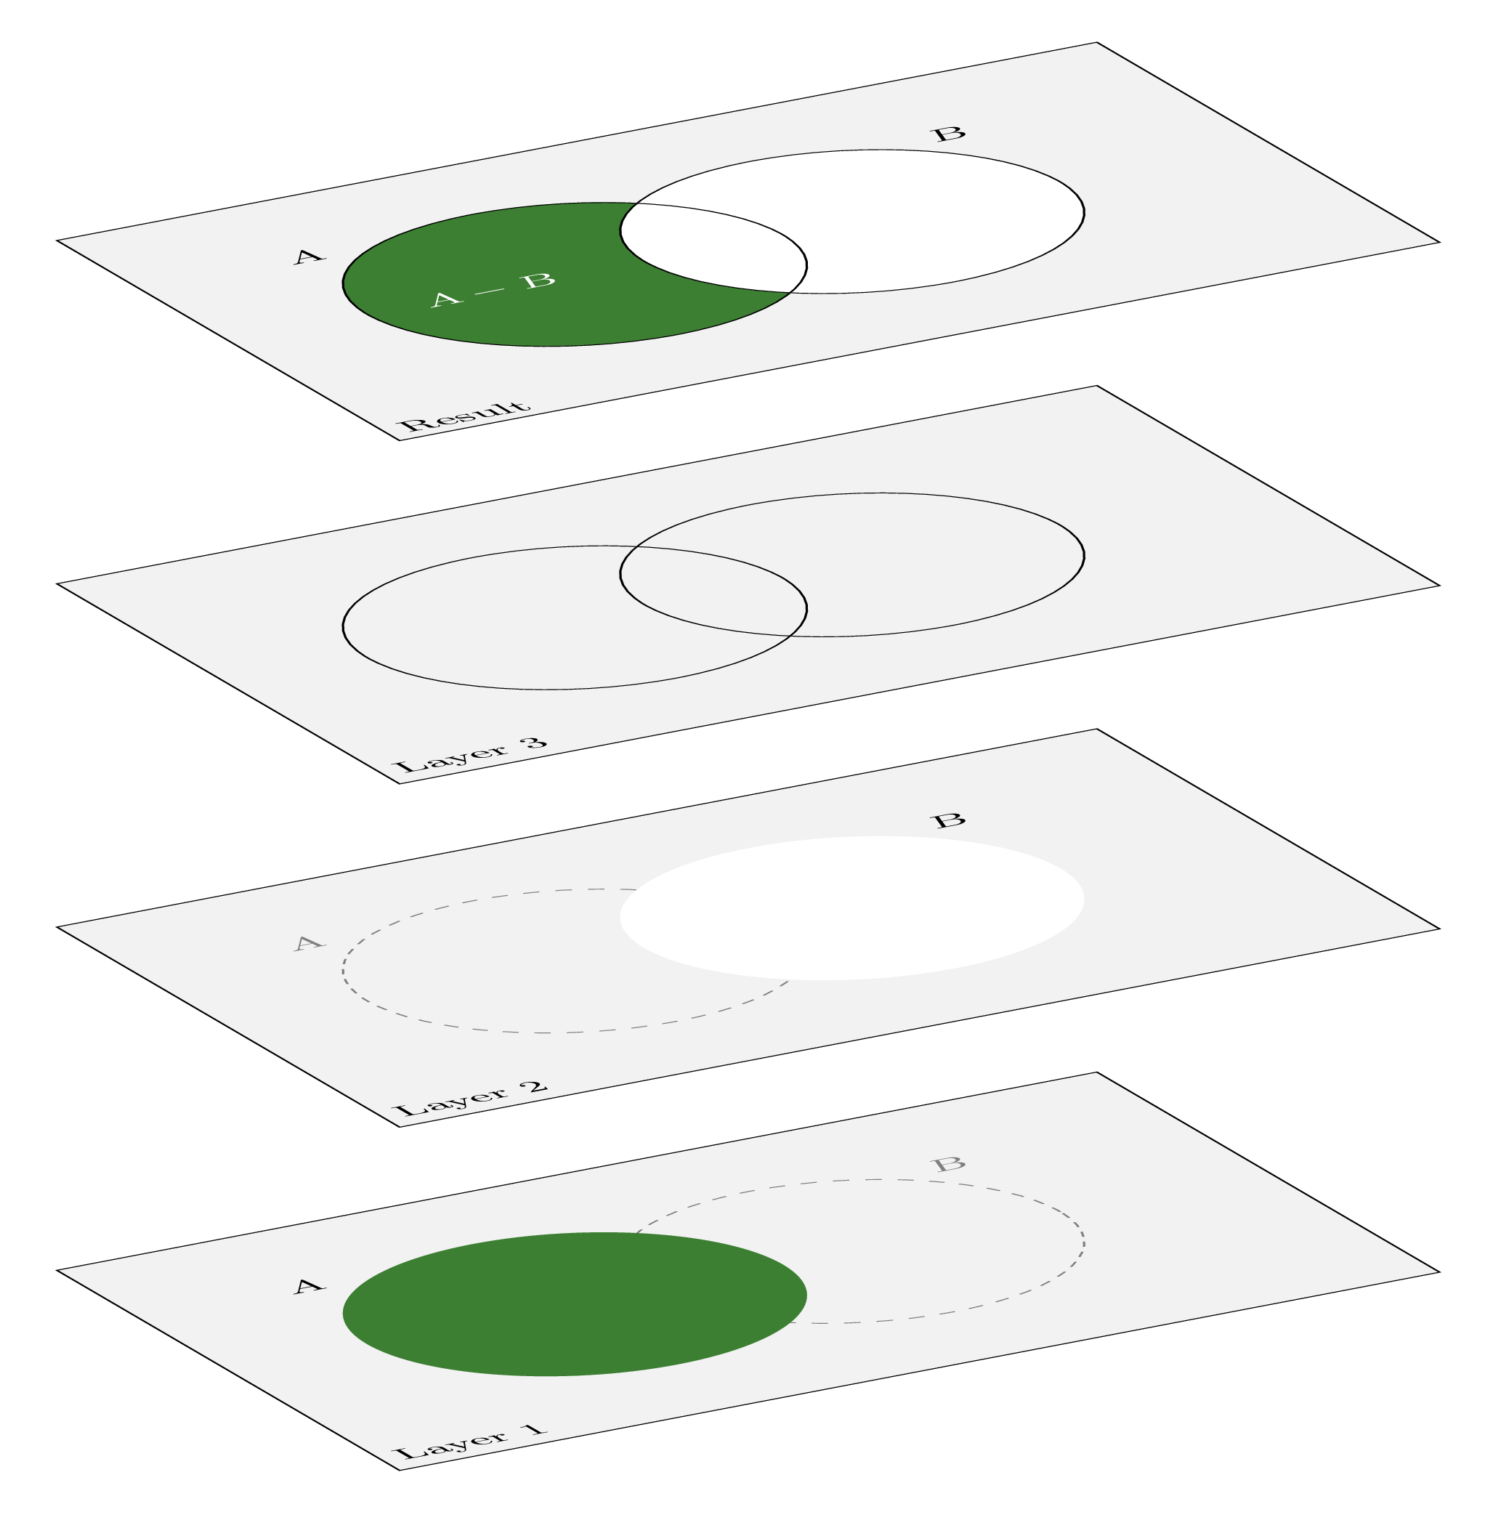 How to draw Venn Diagrams in LaTeX TikZBlog